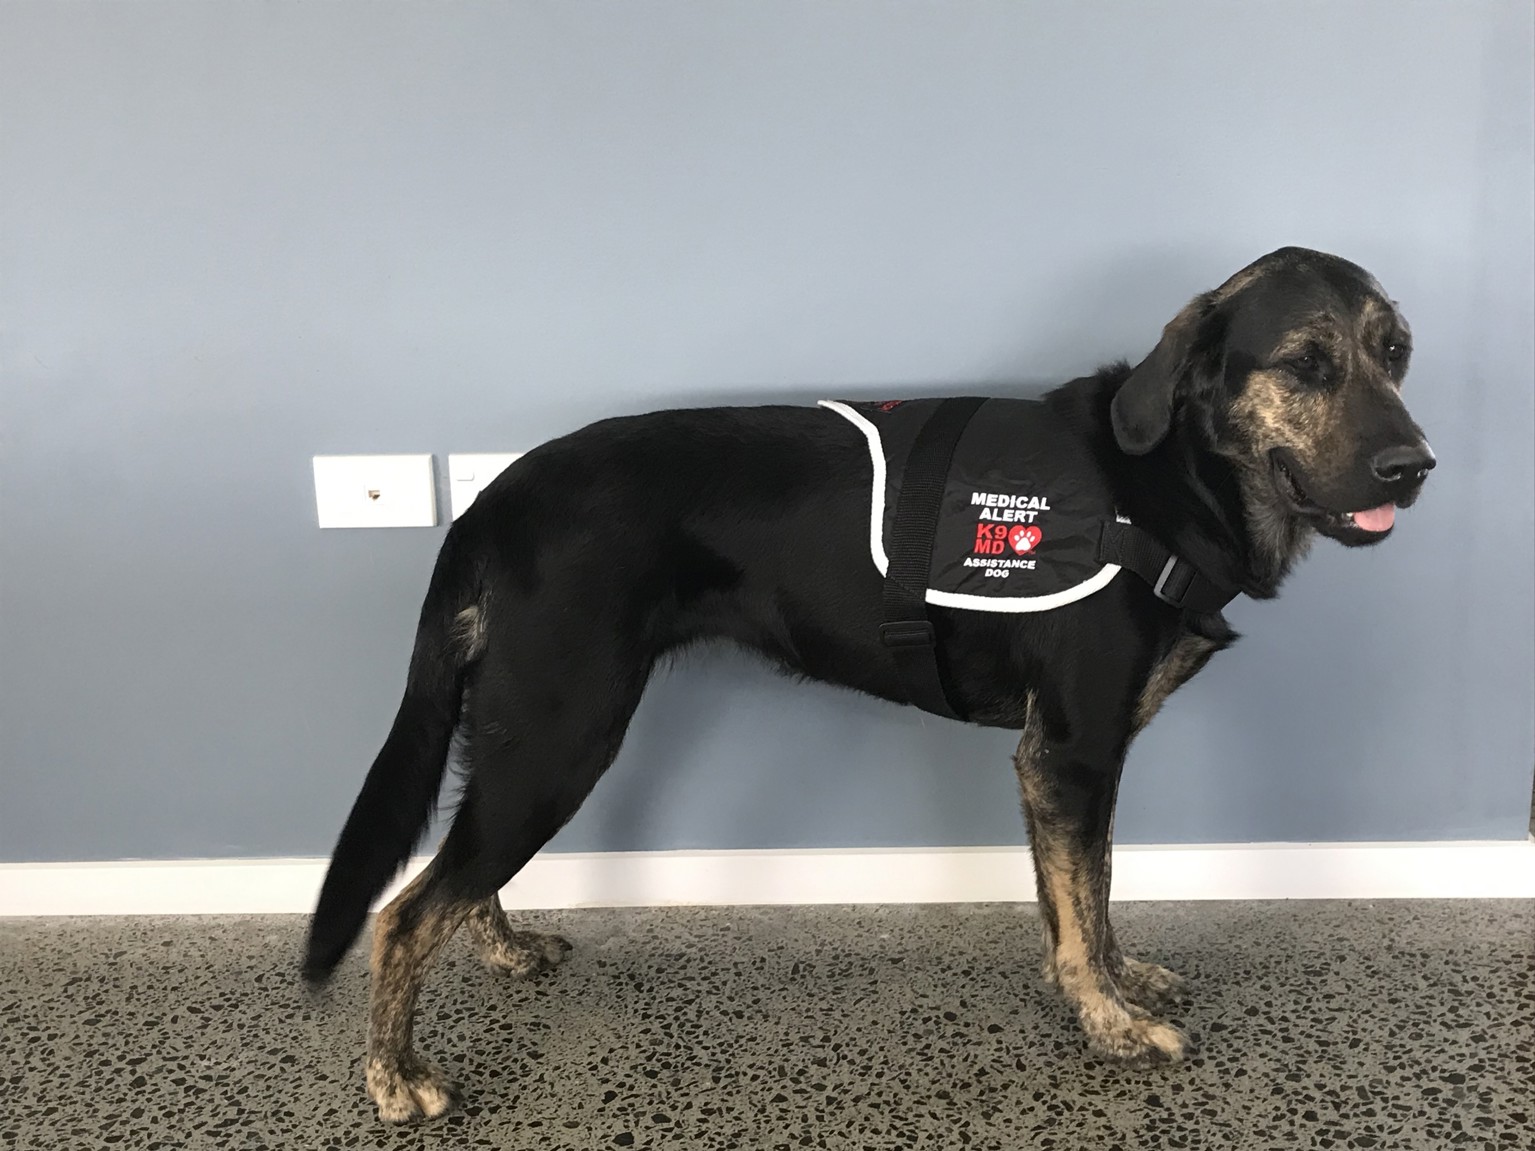 Image showing K9 Medical Detection New Zealand - Disability assist dog in black vest.